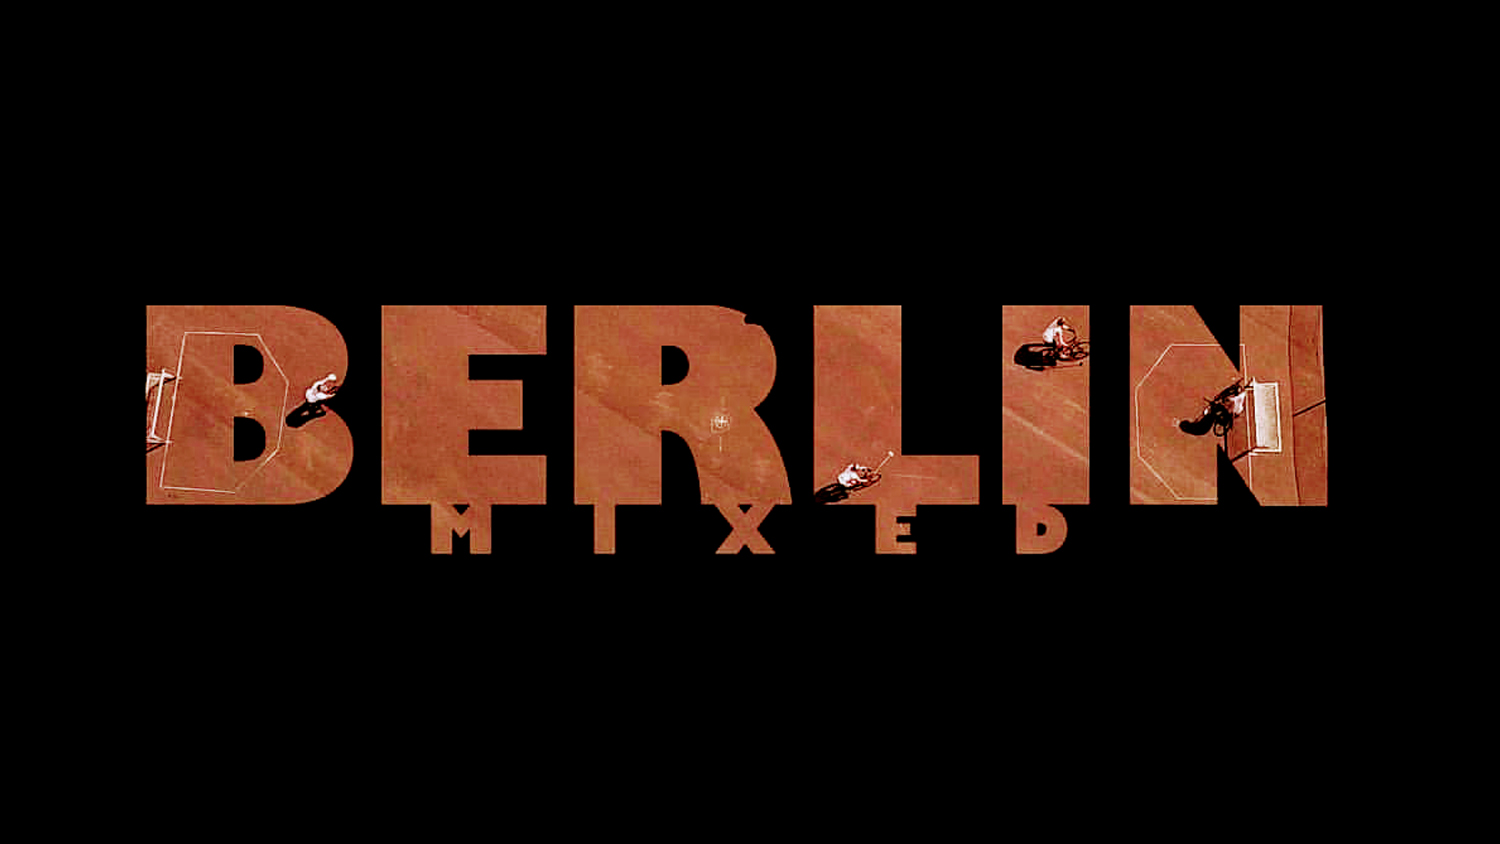 Berlin Mixed 2019 Bike Polo